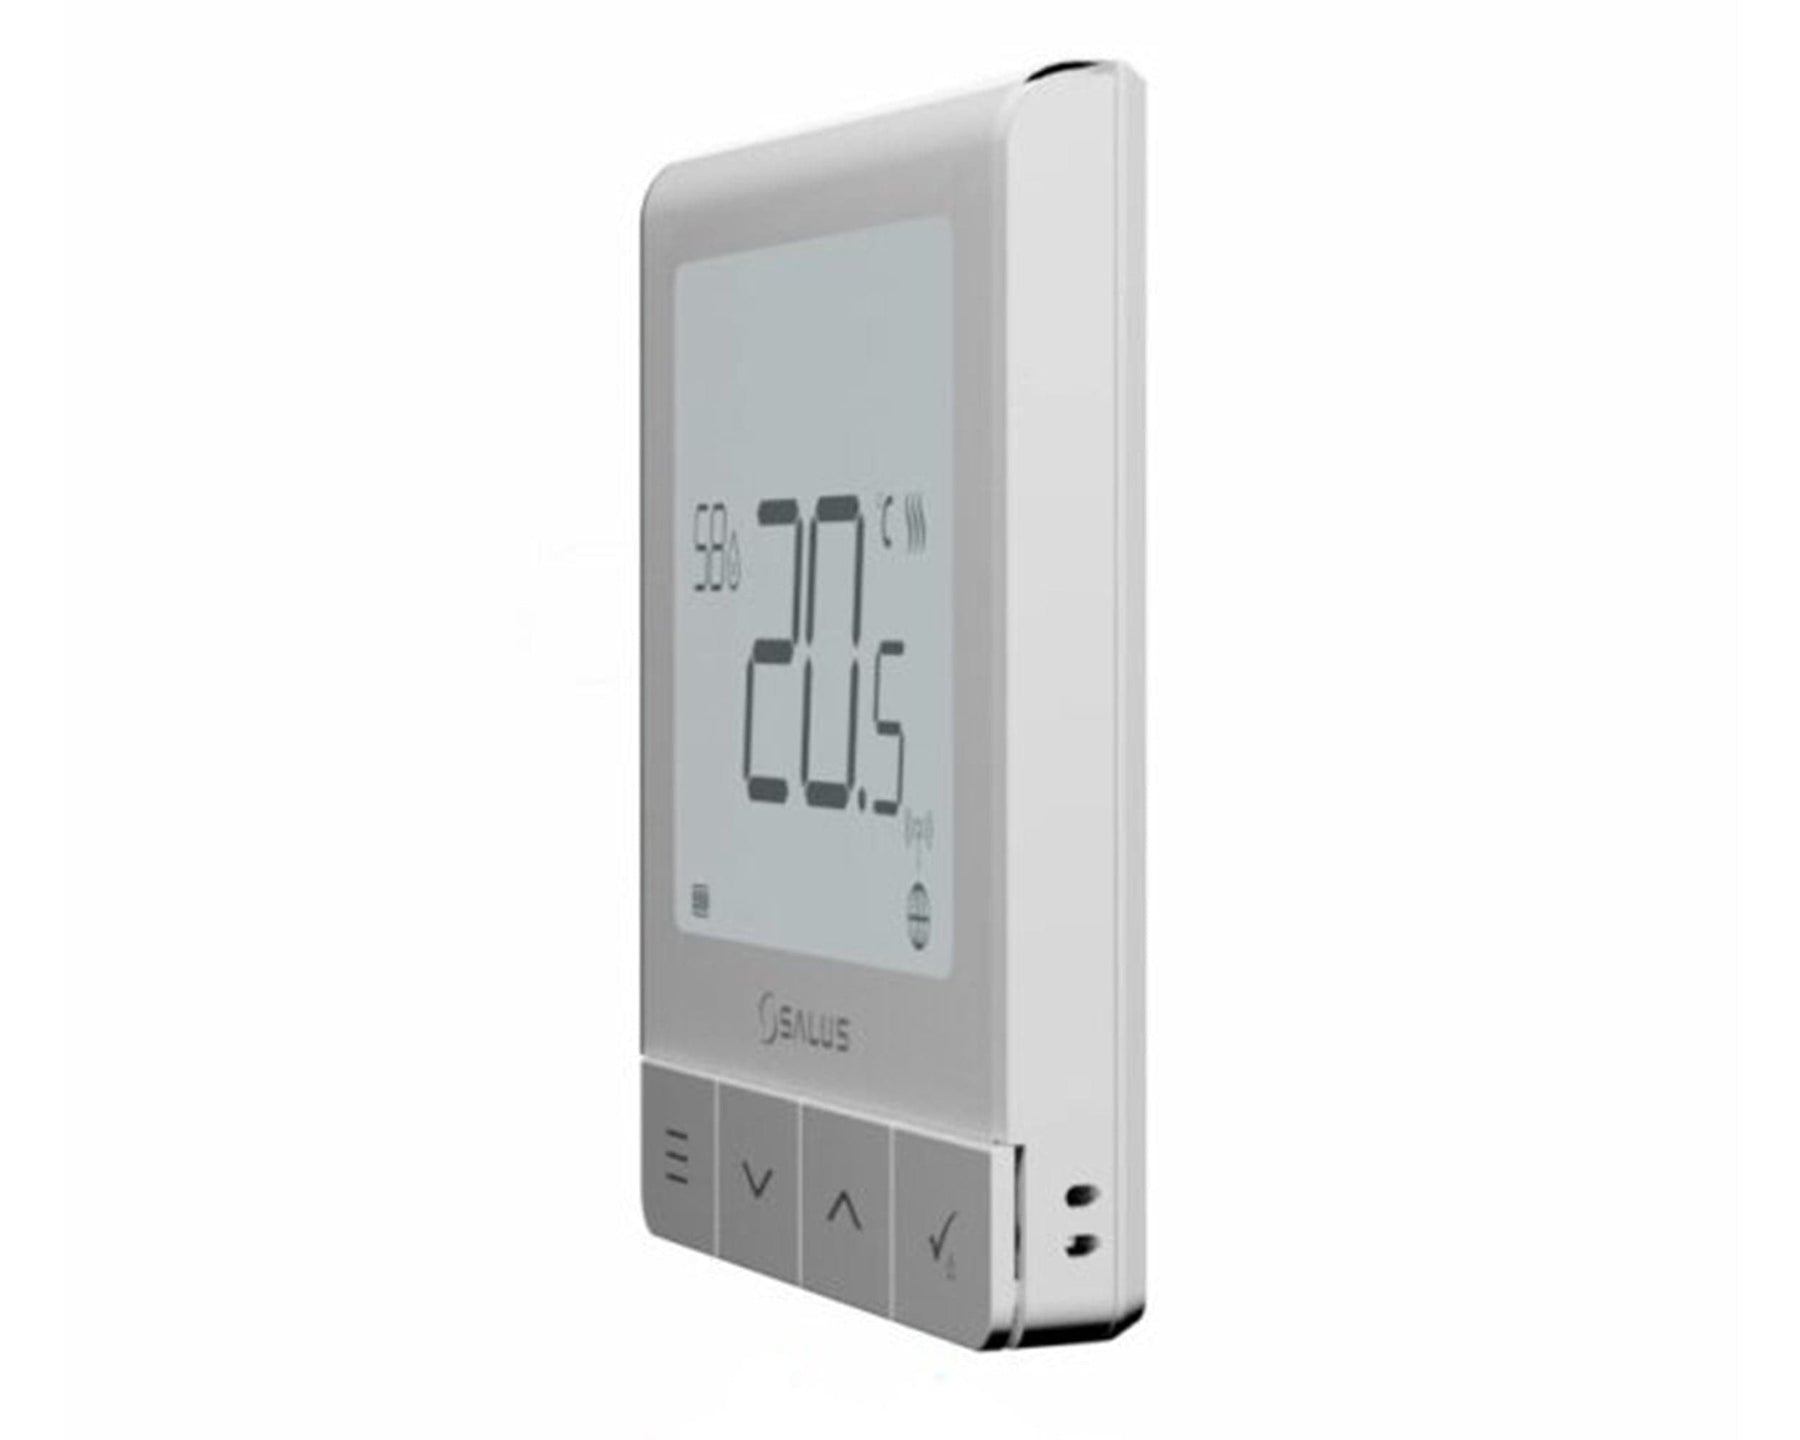 Salus Quantum Hardwired Thermostat - SQ610